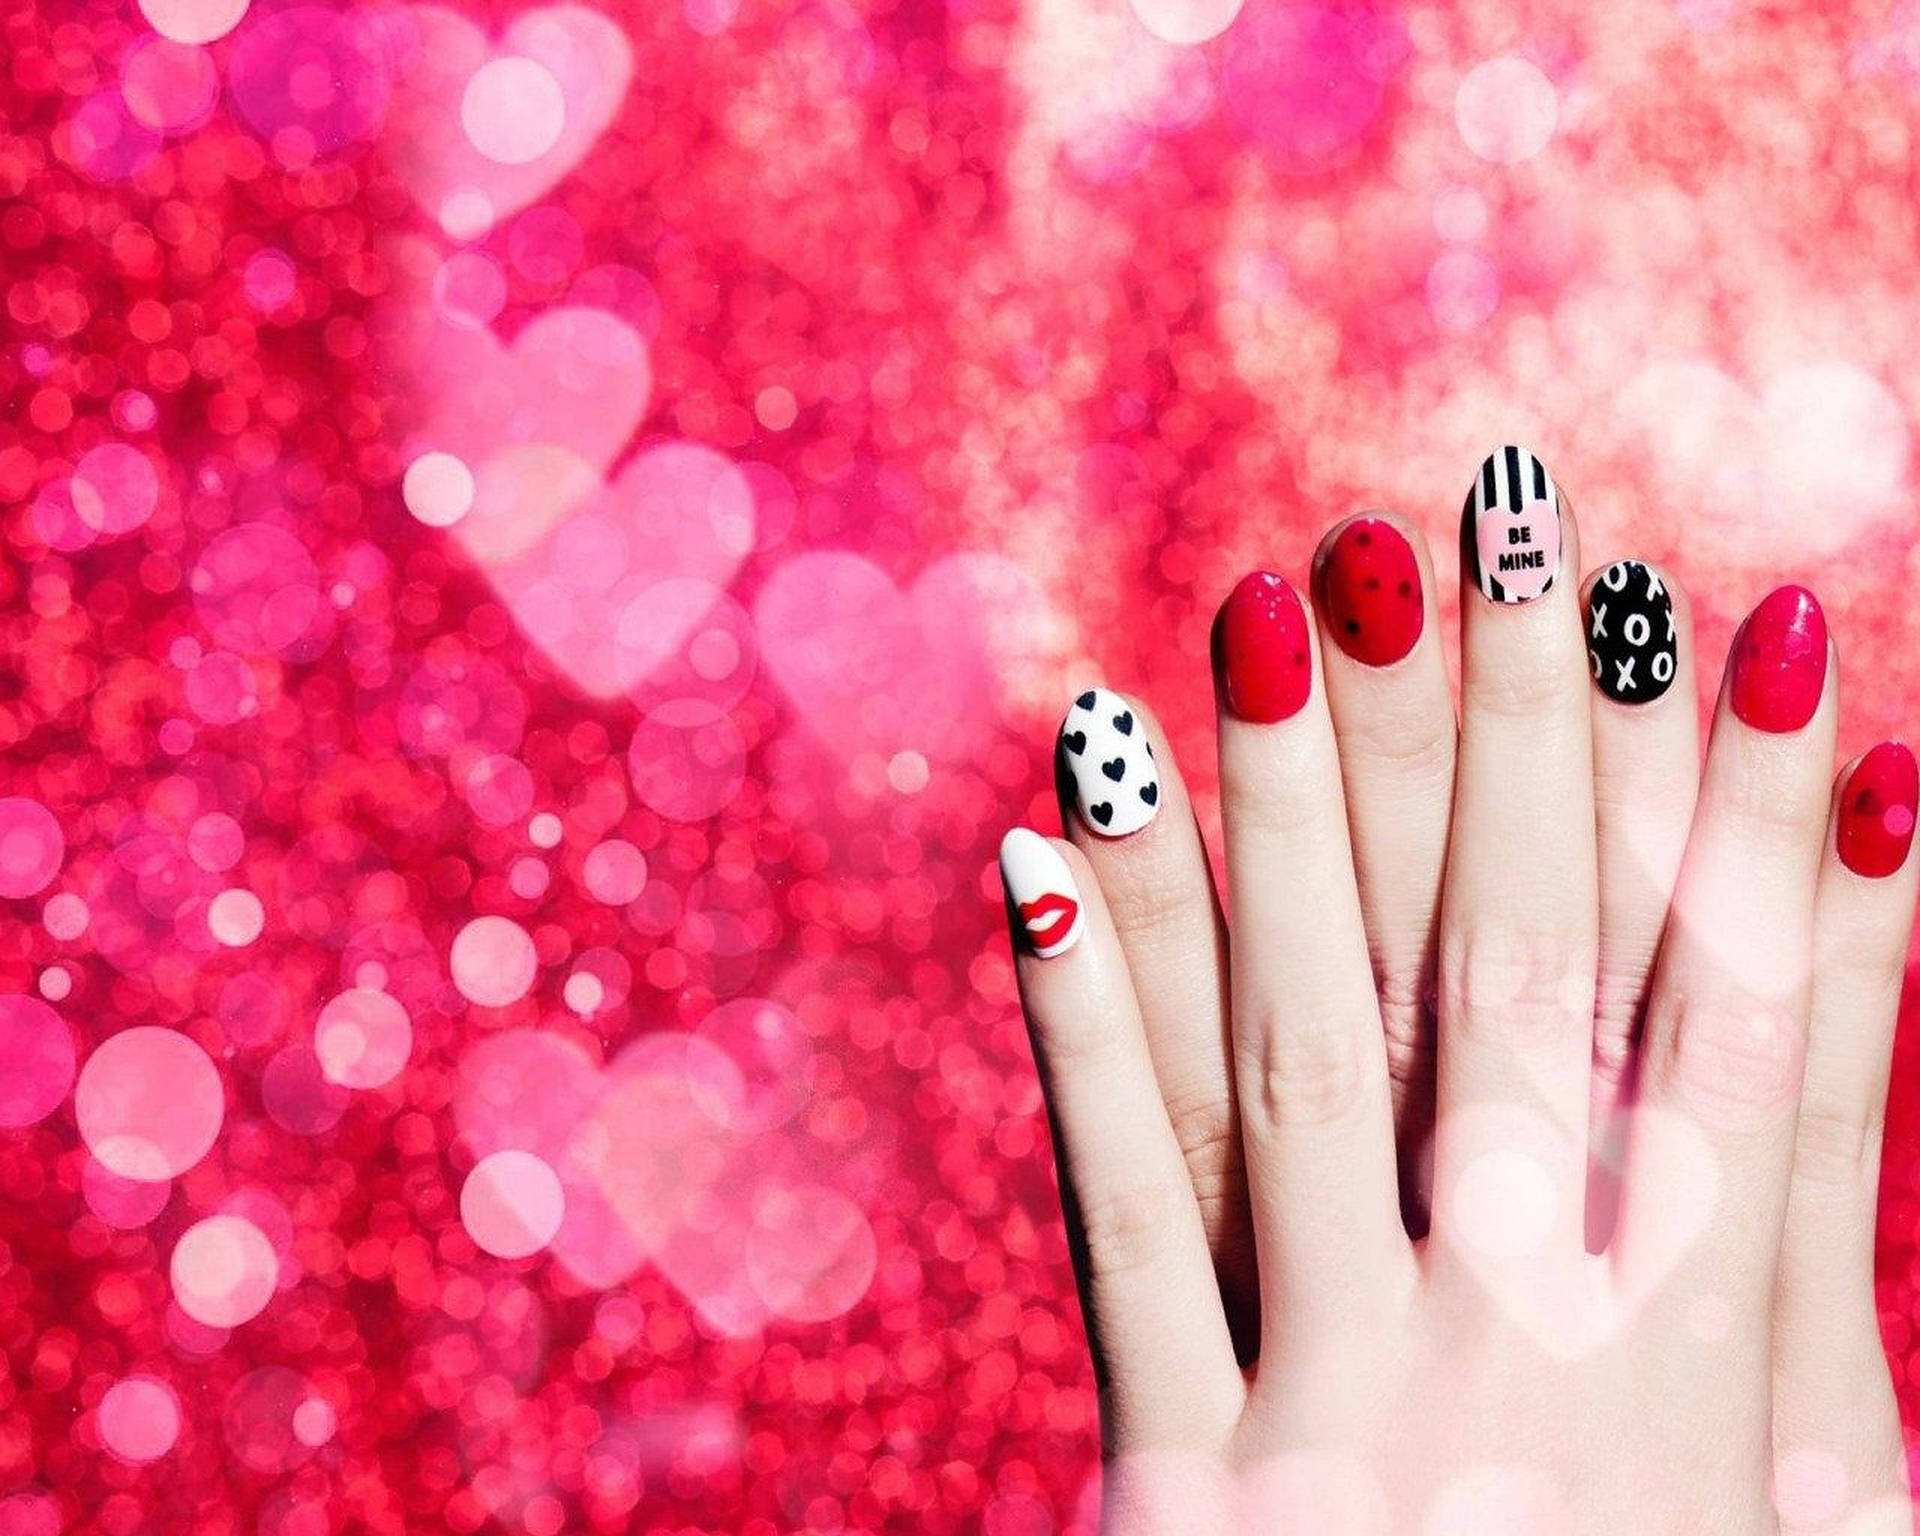 Nails art beauty salon background Stock Vector by ©margolana 75617411